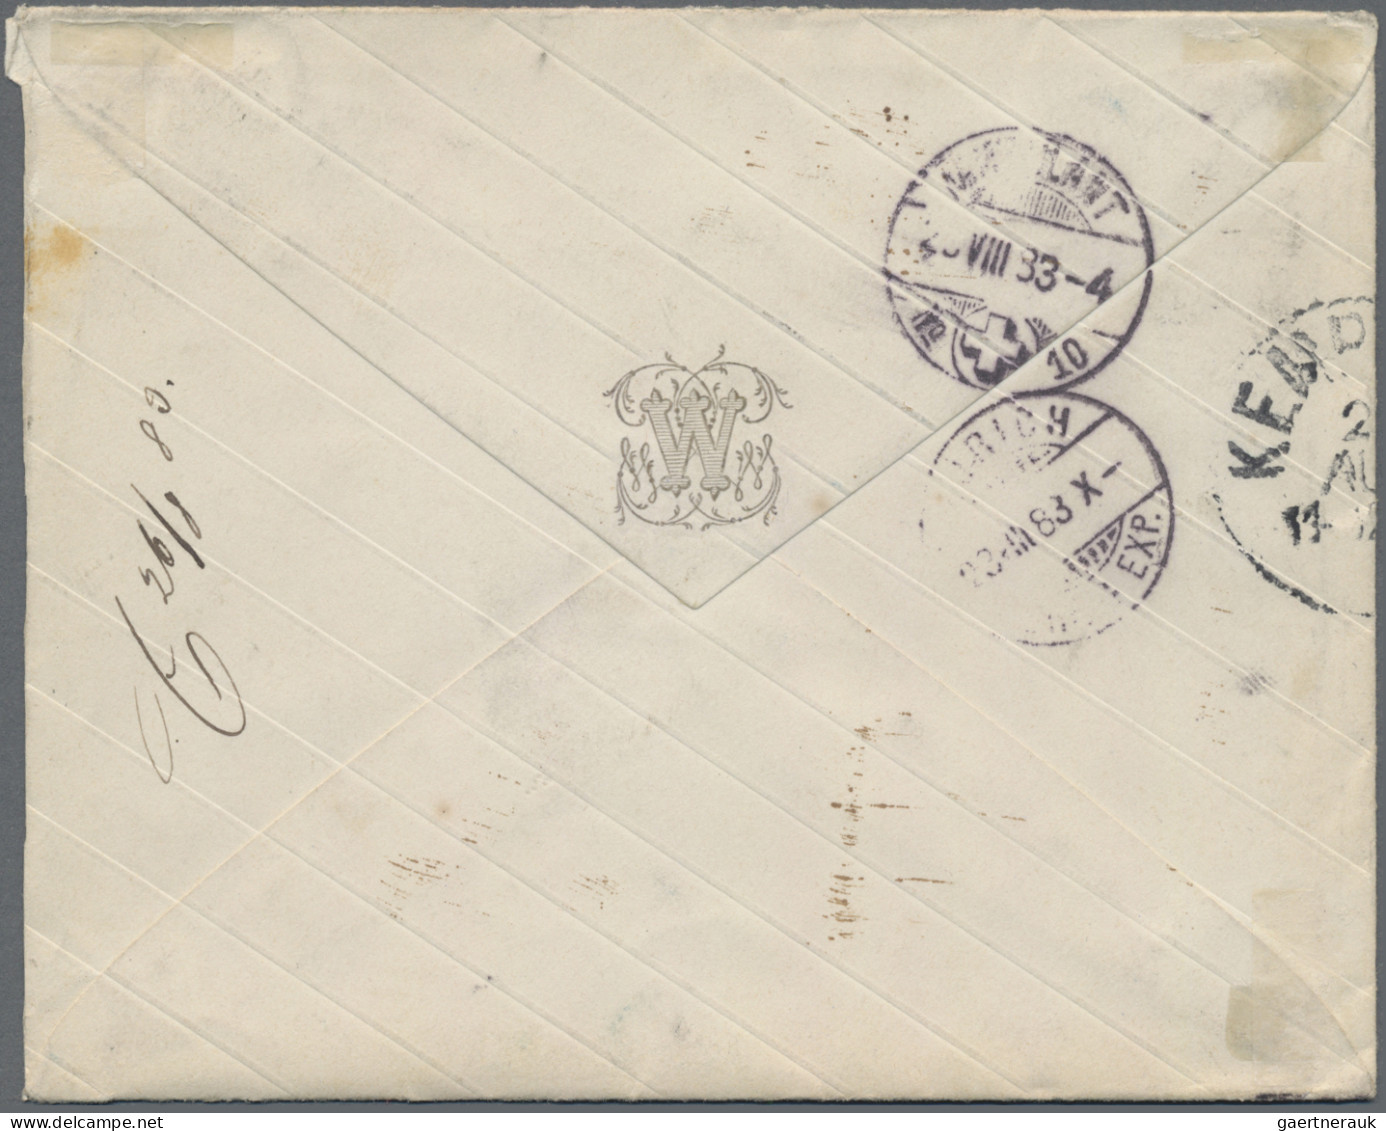 Schweiz - Portomarken: 1883-84 Vier ungenügend frankierte Briefe aus Elberfeld (